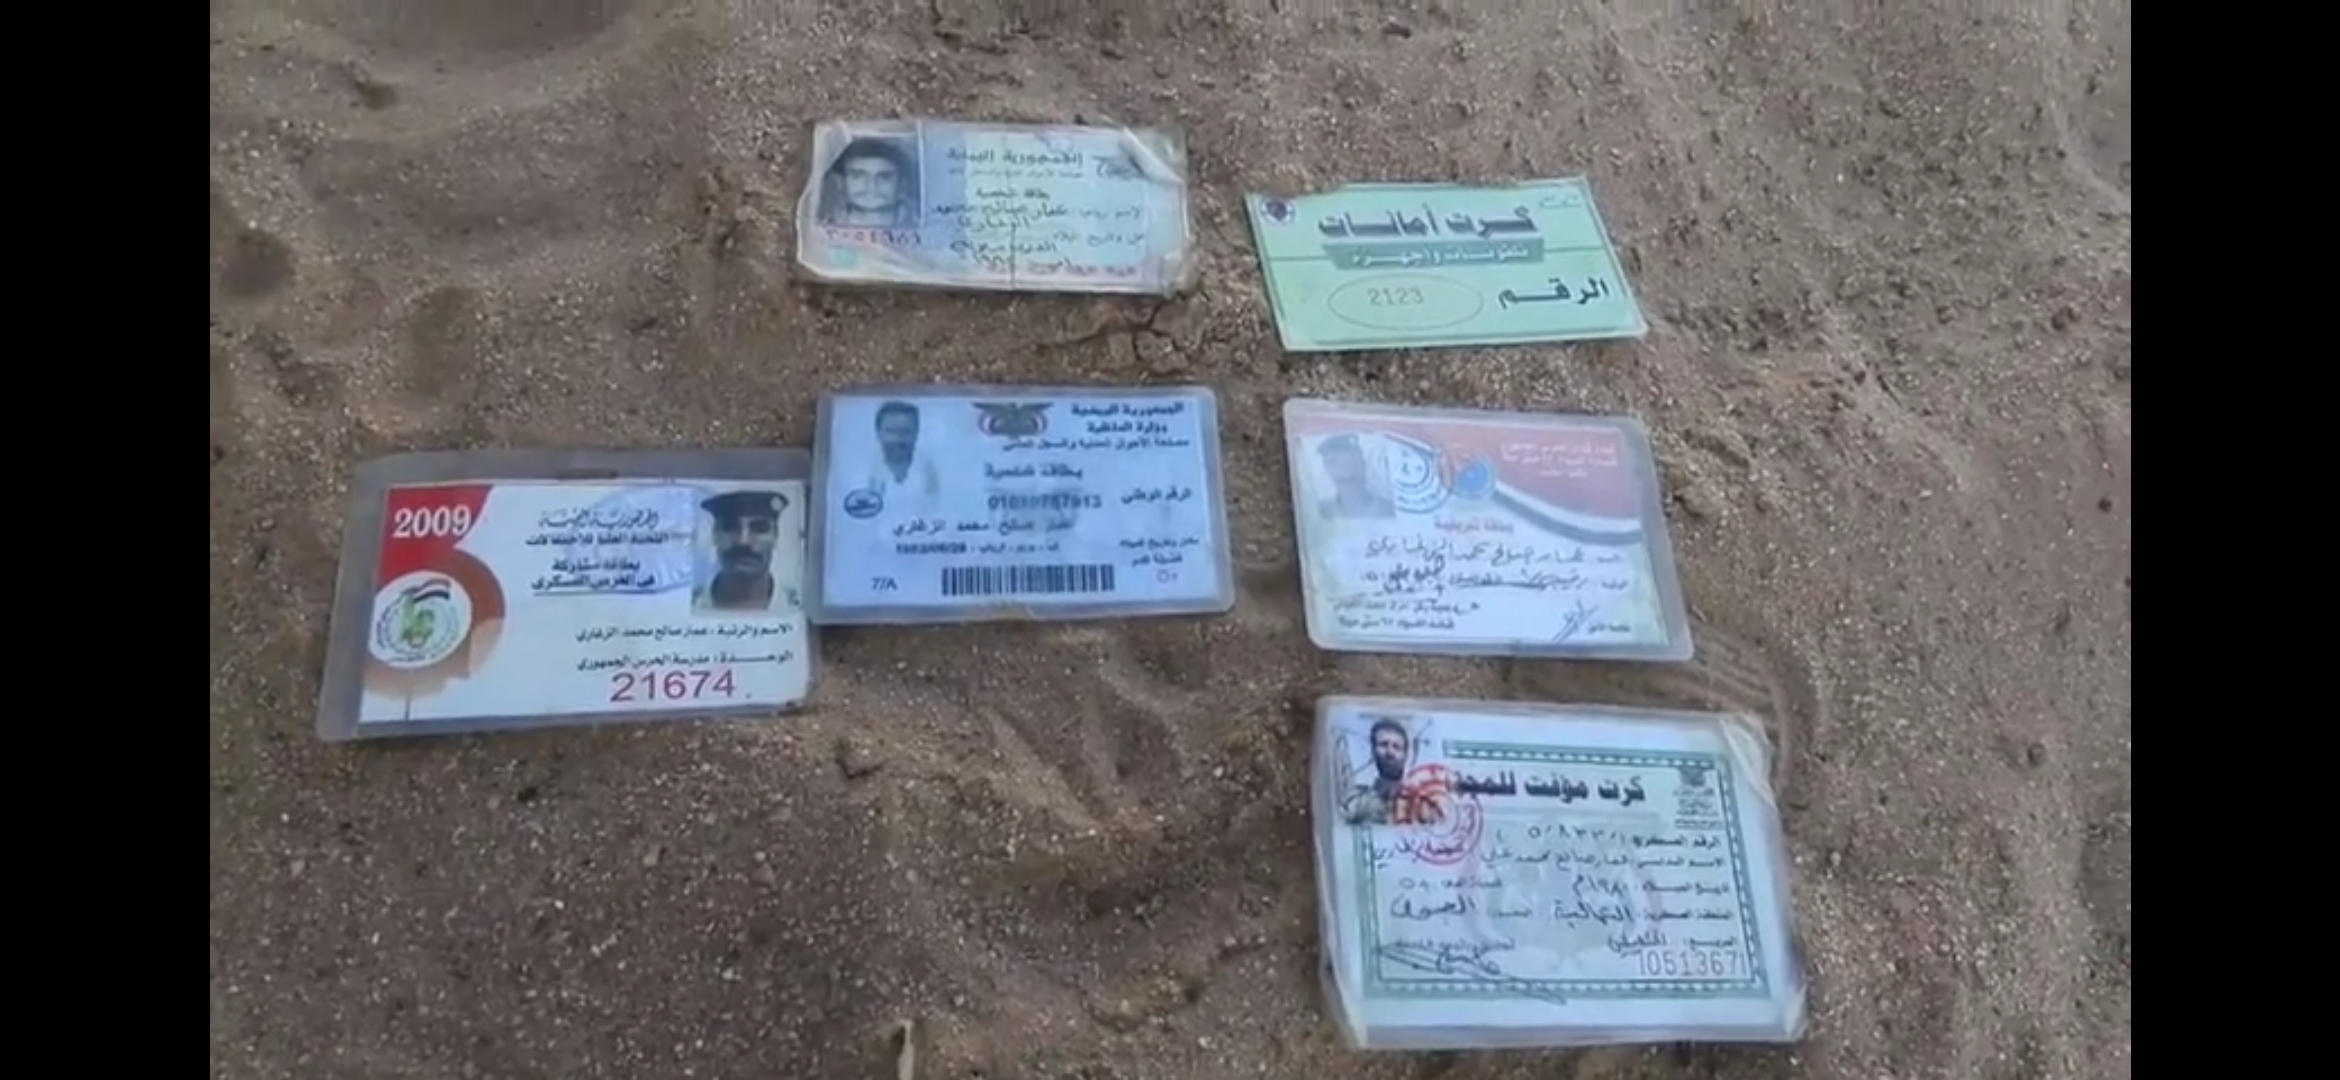 بالفيديو الجيش يعلن عن هويات عناصر حوثية قتلت في الجوف